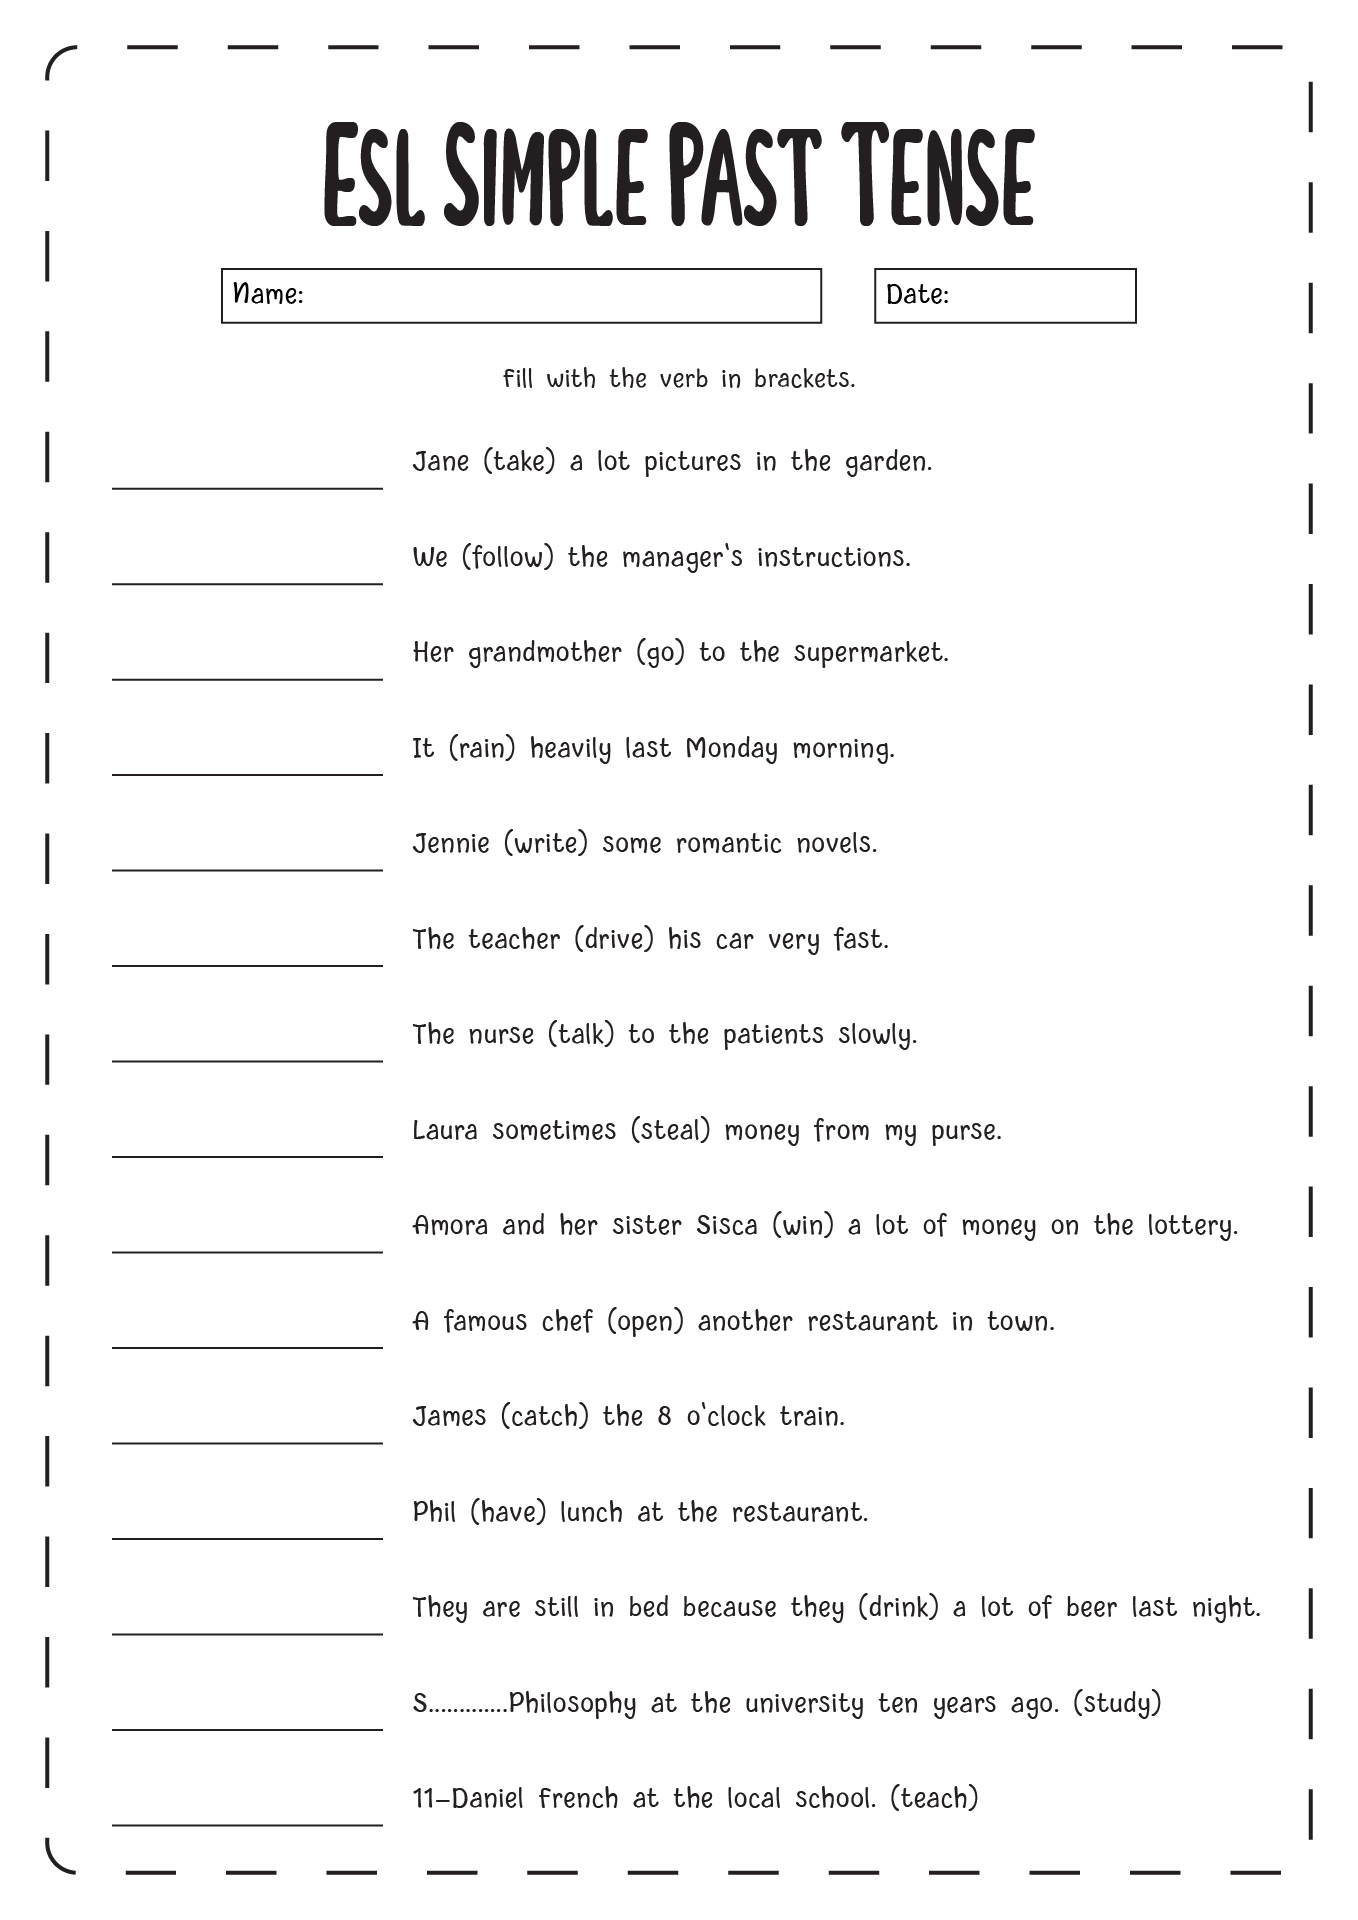 ESL Simple Past Tense Worksheets Image